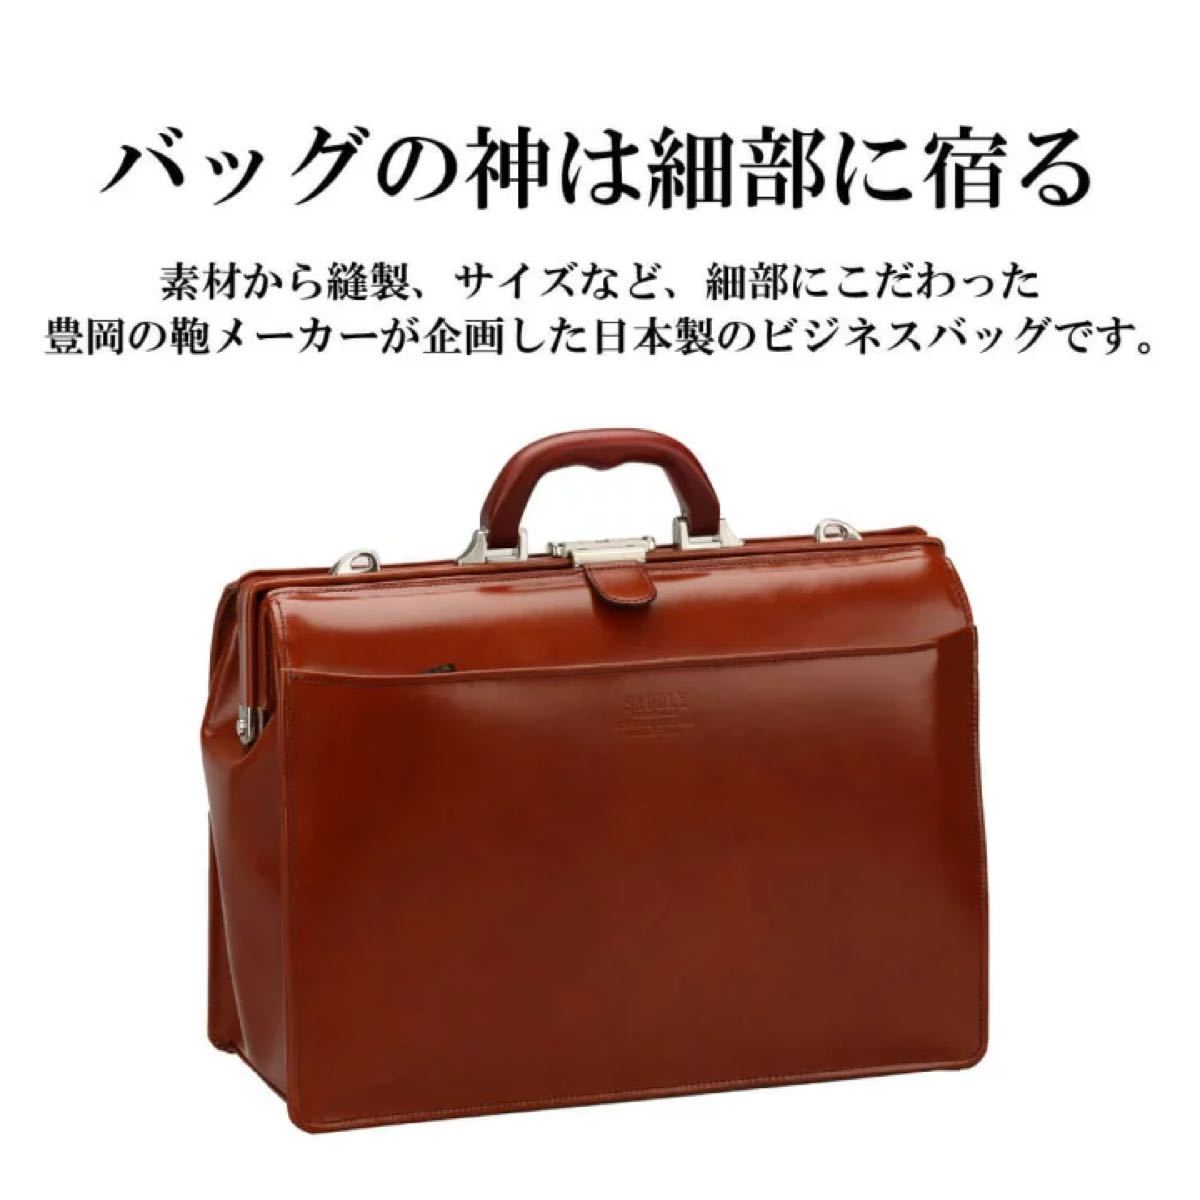 まとめ割引対象 牛革 ダレスバッグ 日本製 本革 ビジネスバッグ 22304 A4 豊岡製鞄 